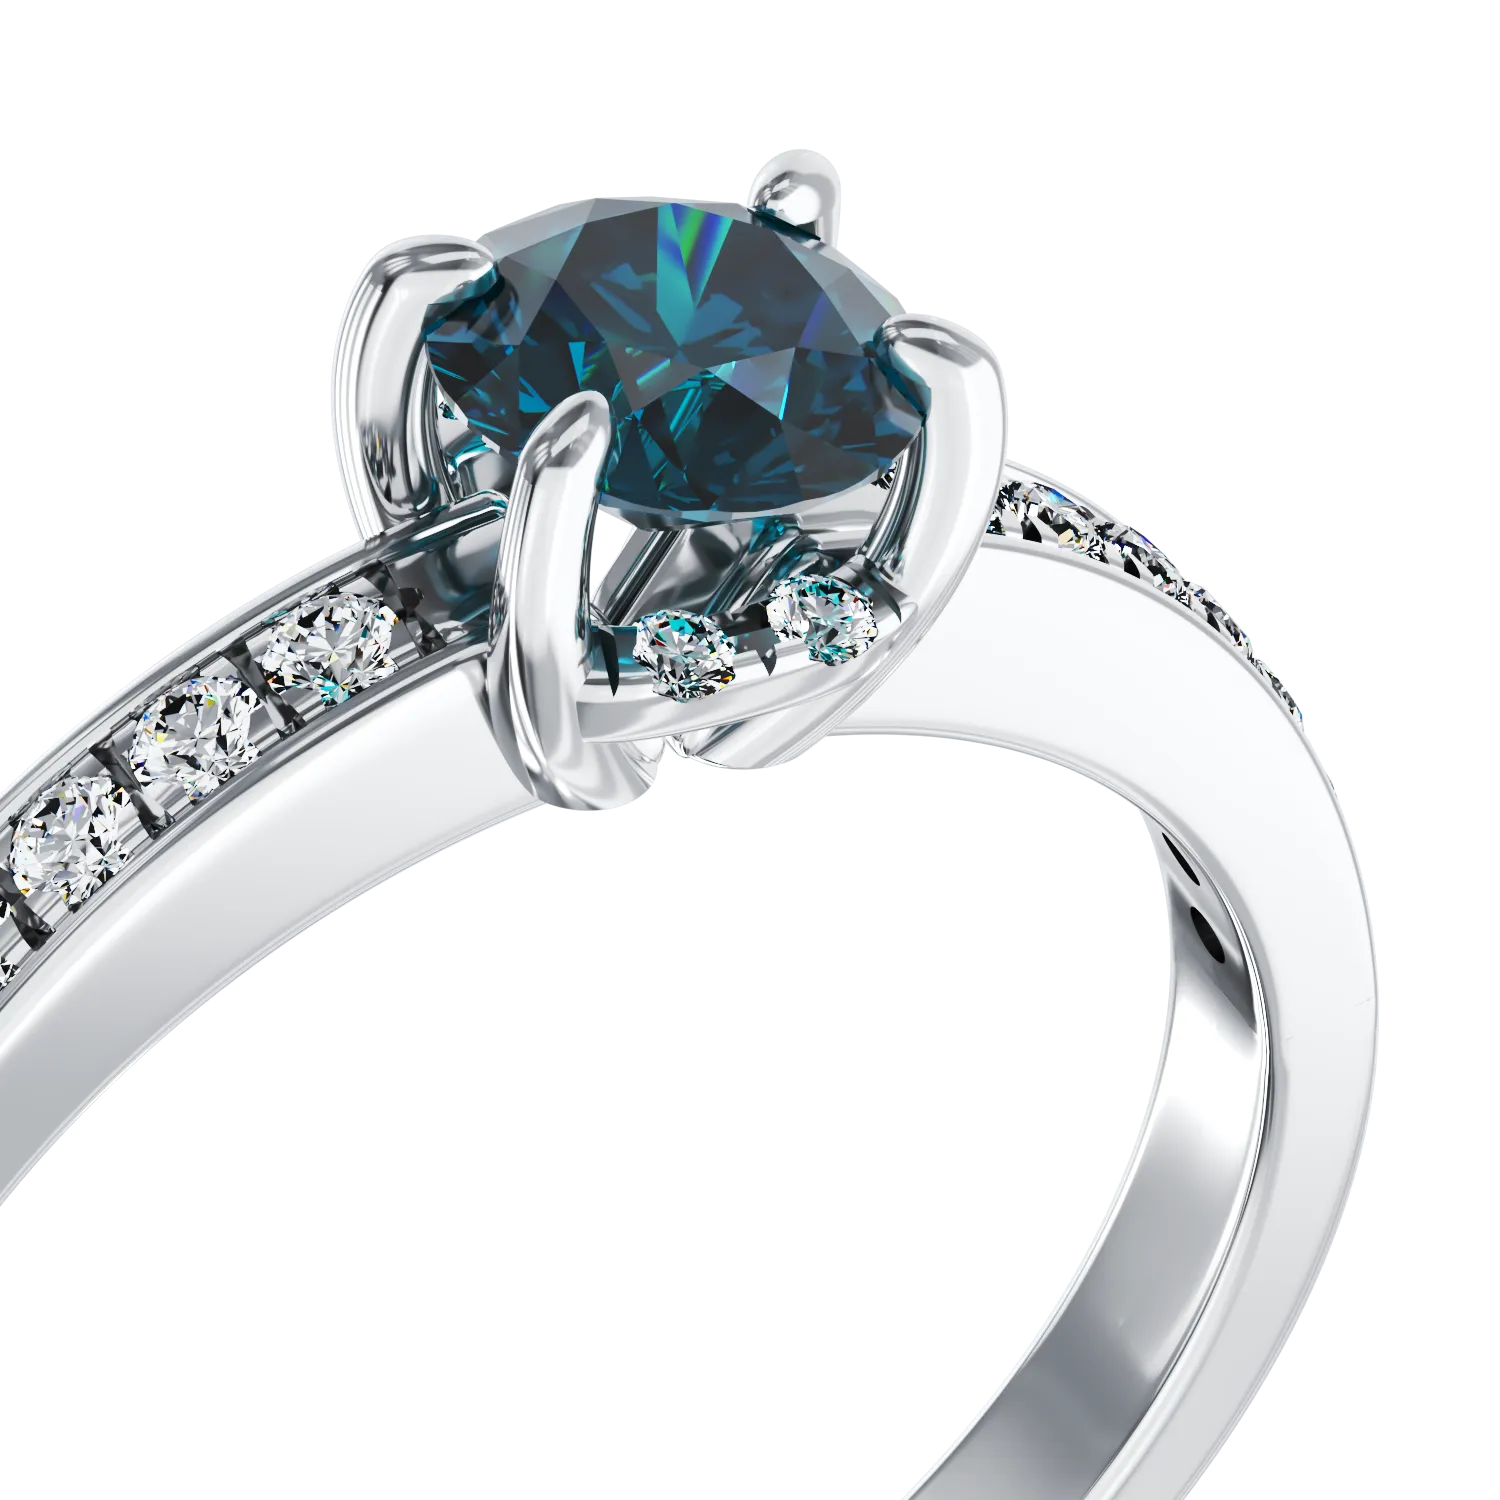 Eljegyzési gyűrű 18K-os fehér aranyból 0,44ct kék gyémánttal és 0,2ct gyémánttal